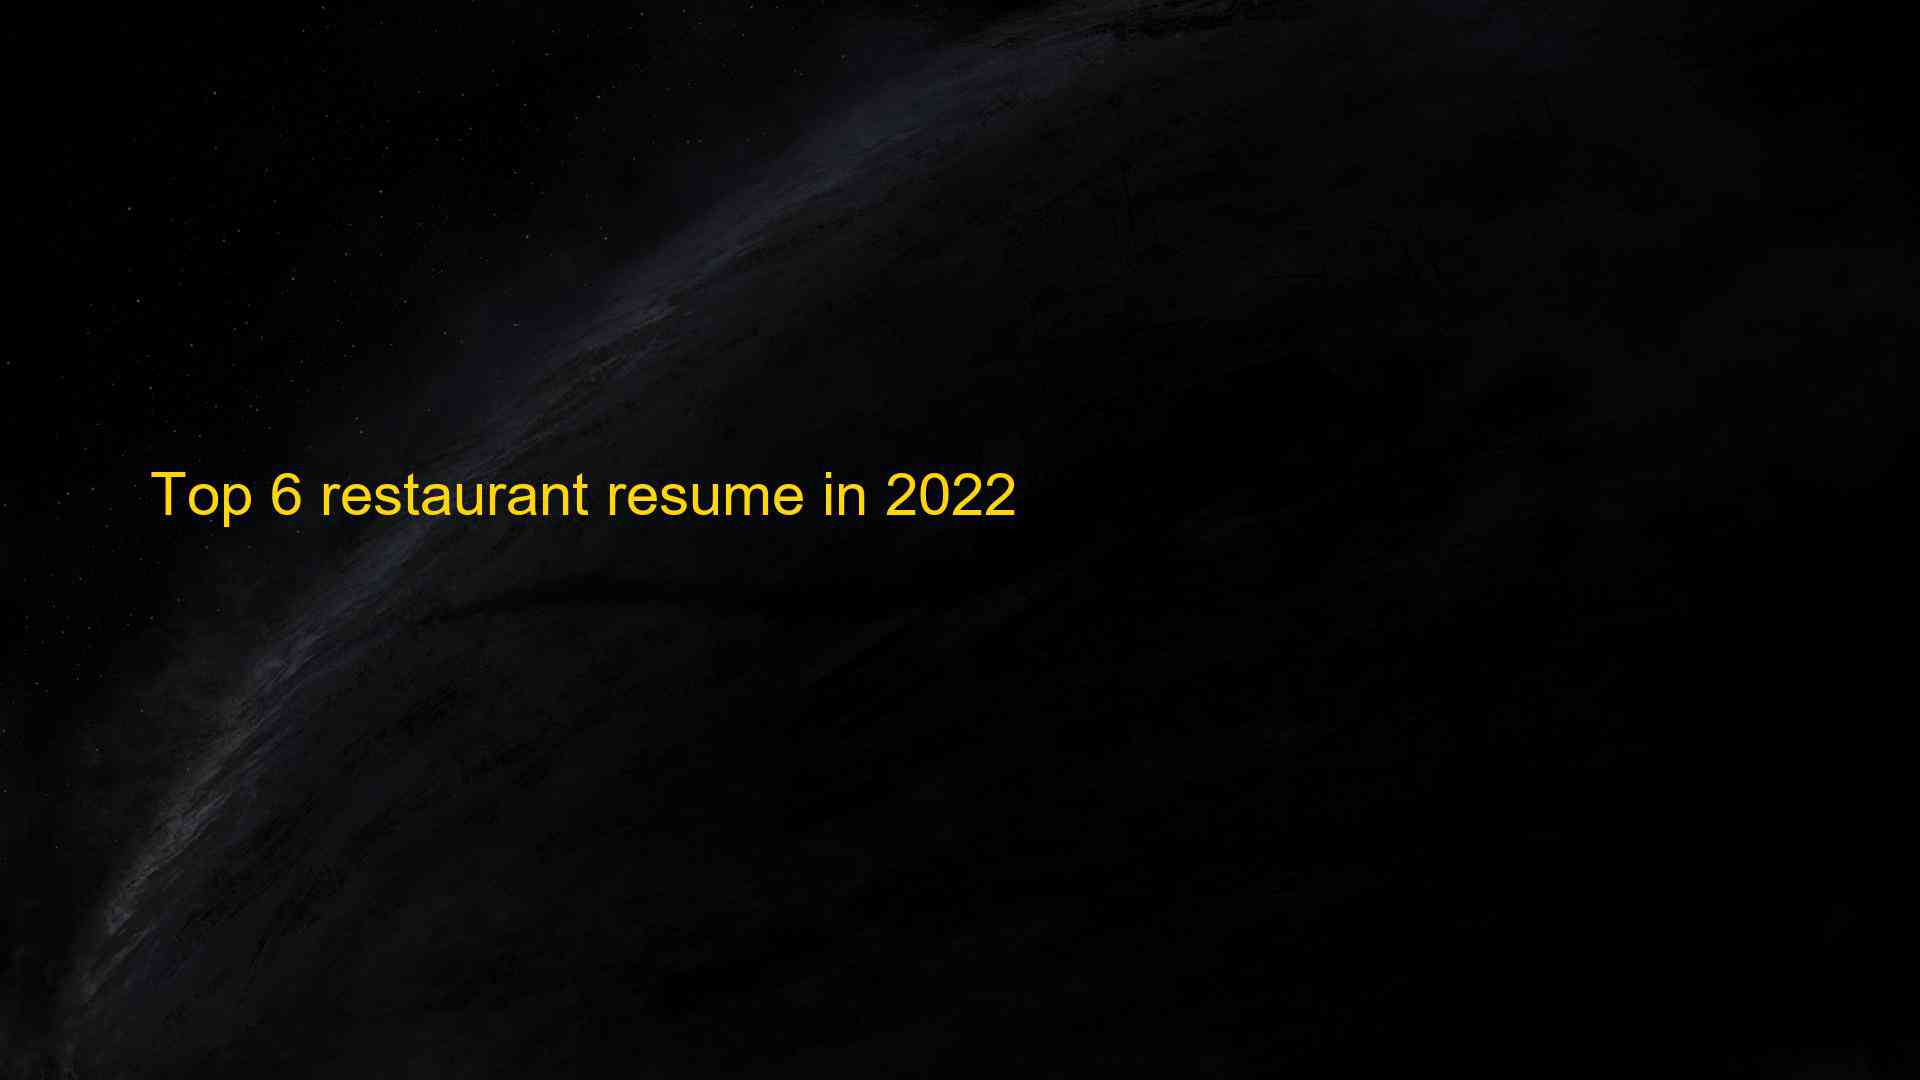 Top 6 restaurant resume in 2022 1663537408